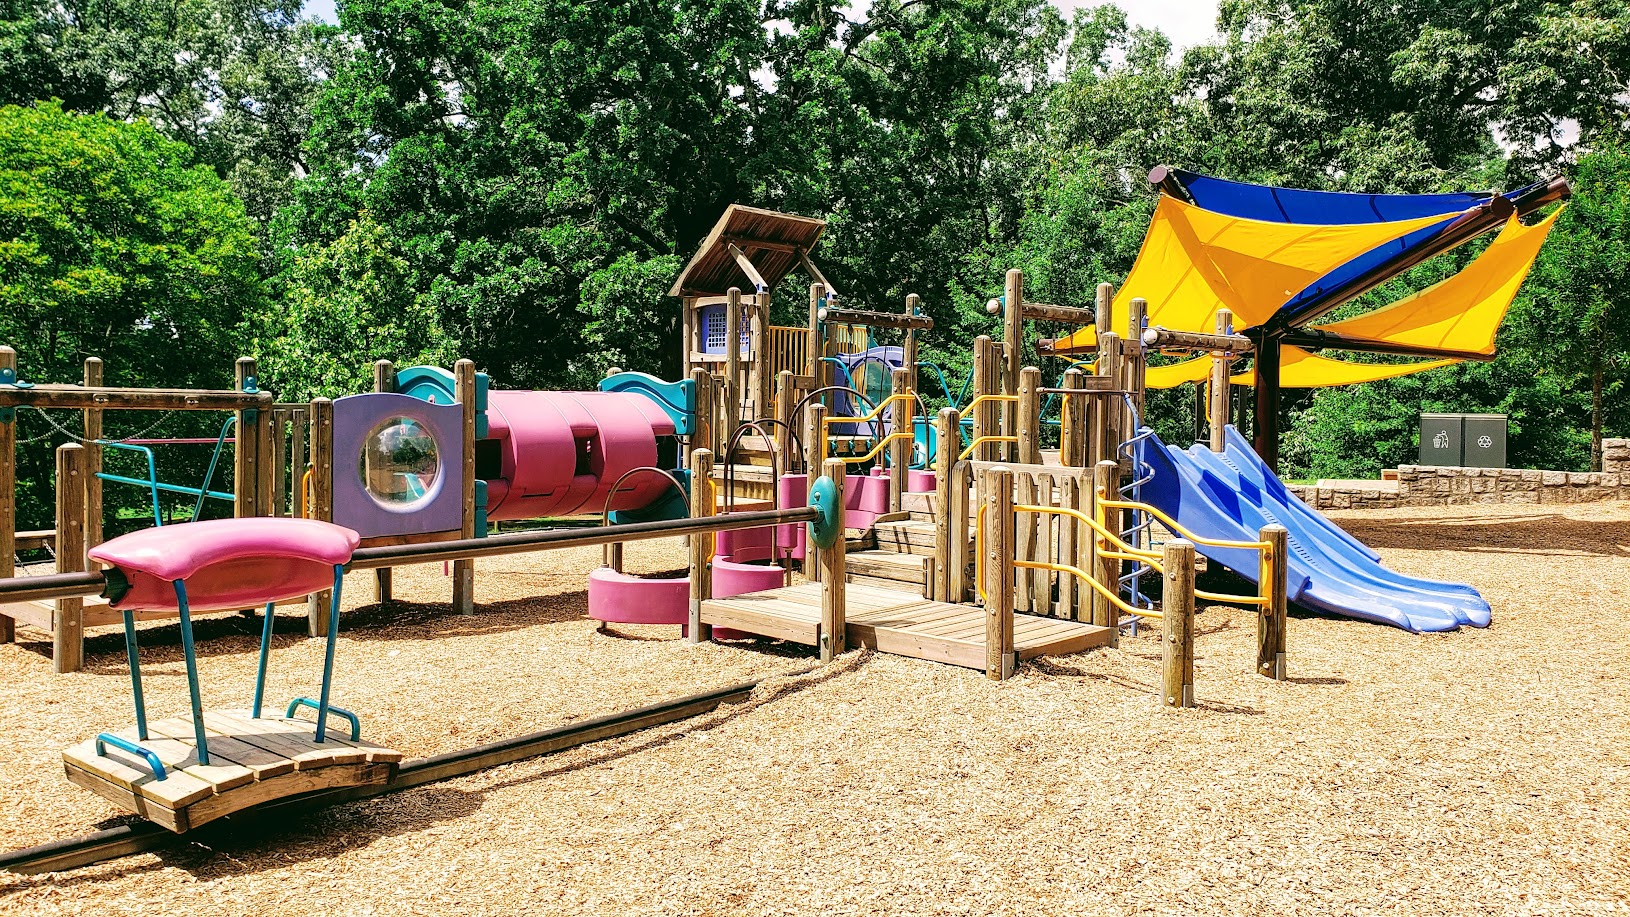 Chastain Park Playground